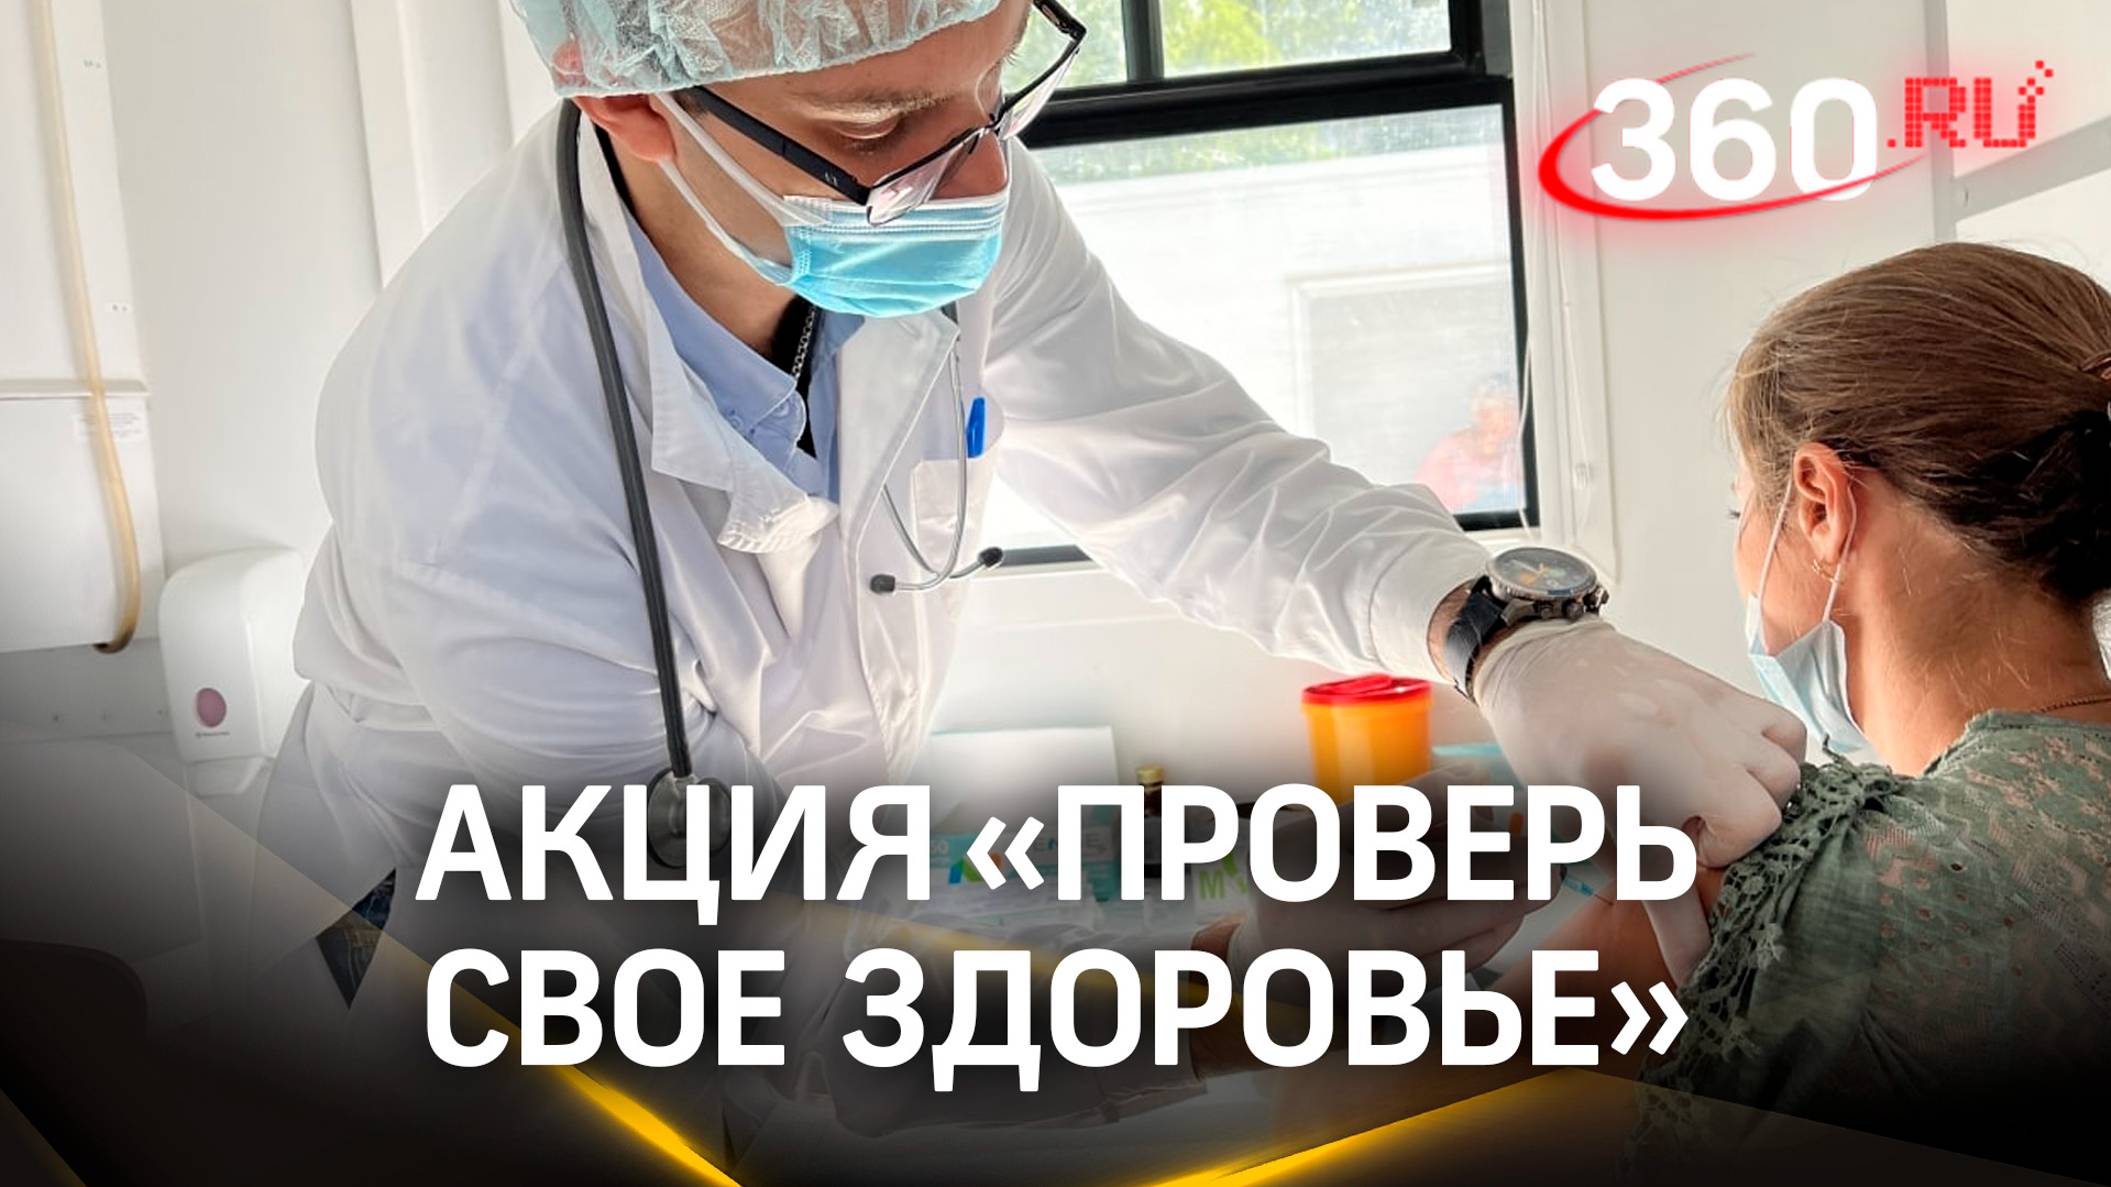 Акция «Проверь своё здоровье» прошла в Егорьевске